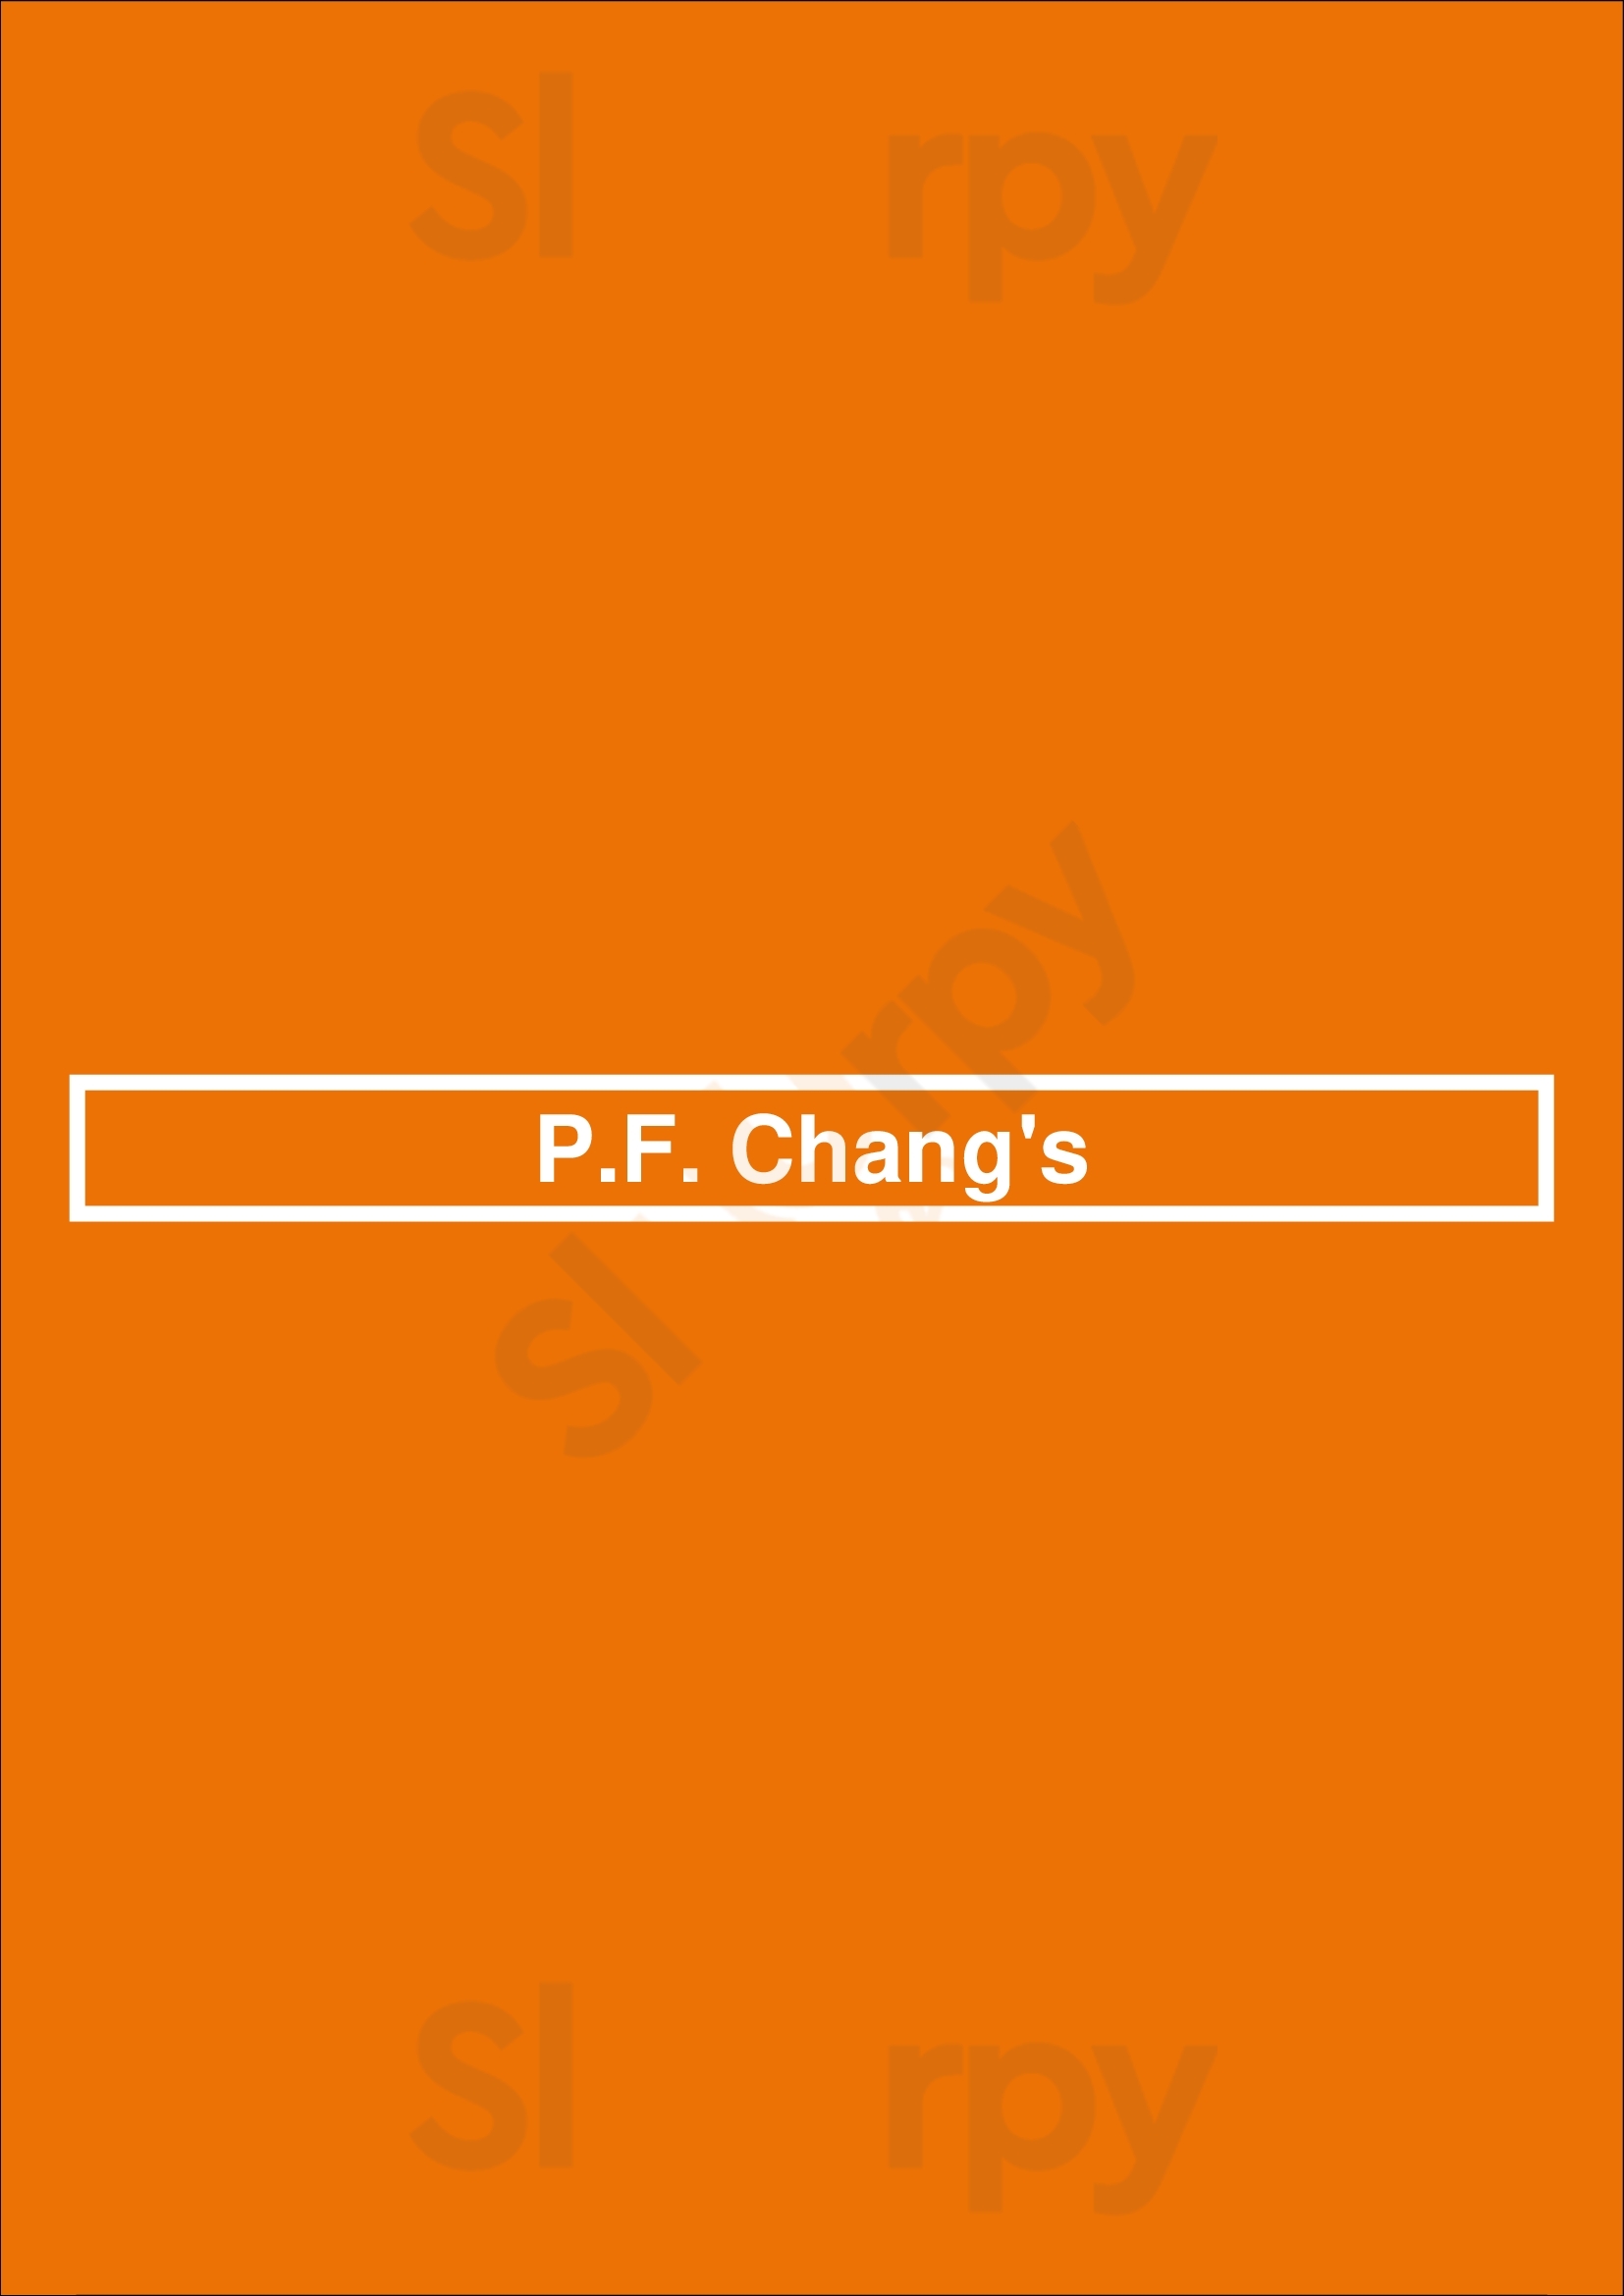 P.f. Chang's Dallas Menu - 1